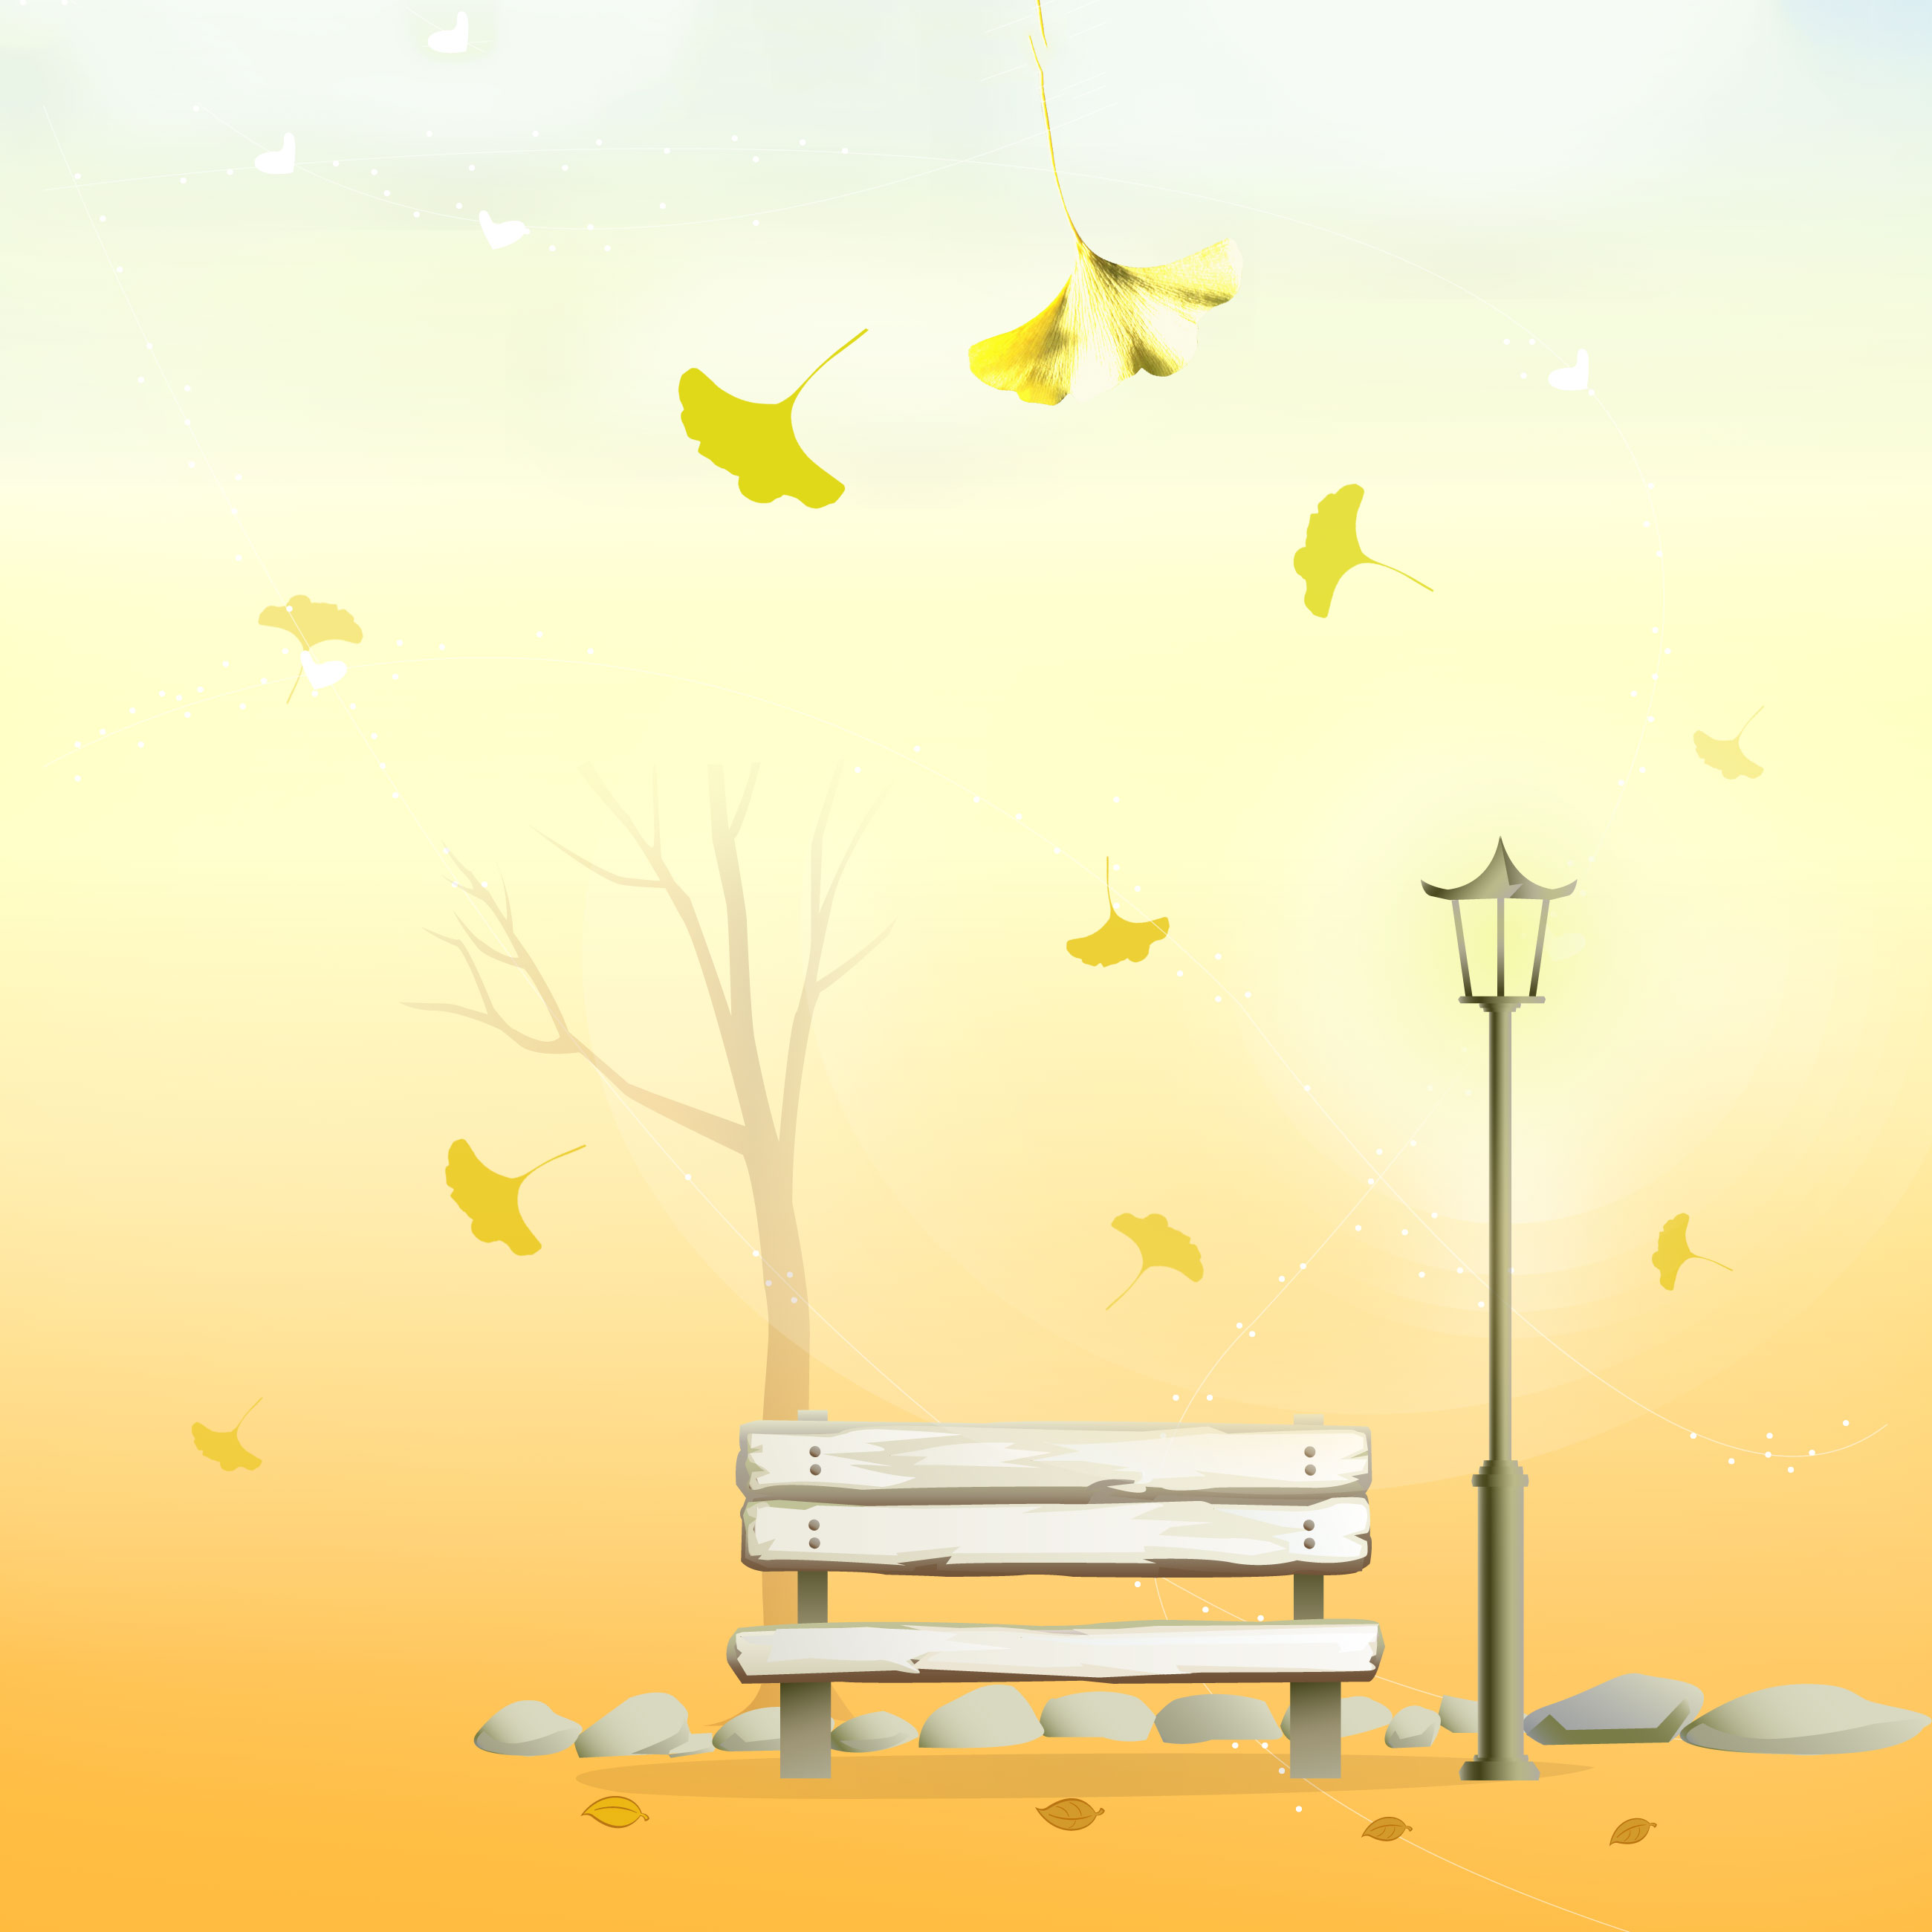 秋のイラストno 237 イチョウの舞う公園 無料のフリー素材集 花鳥風月